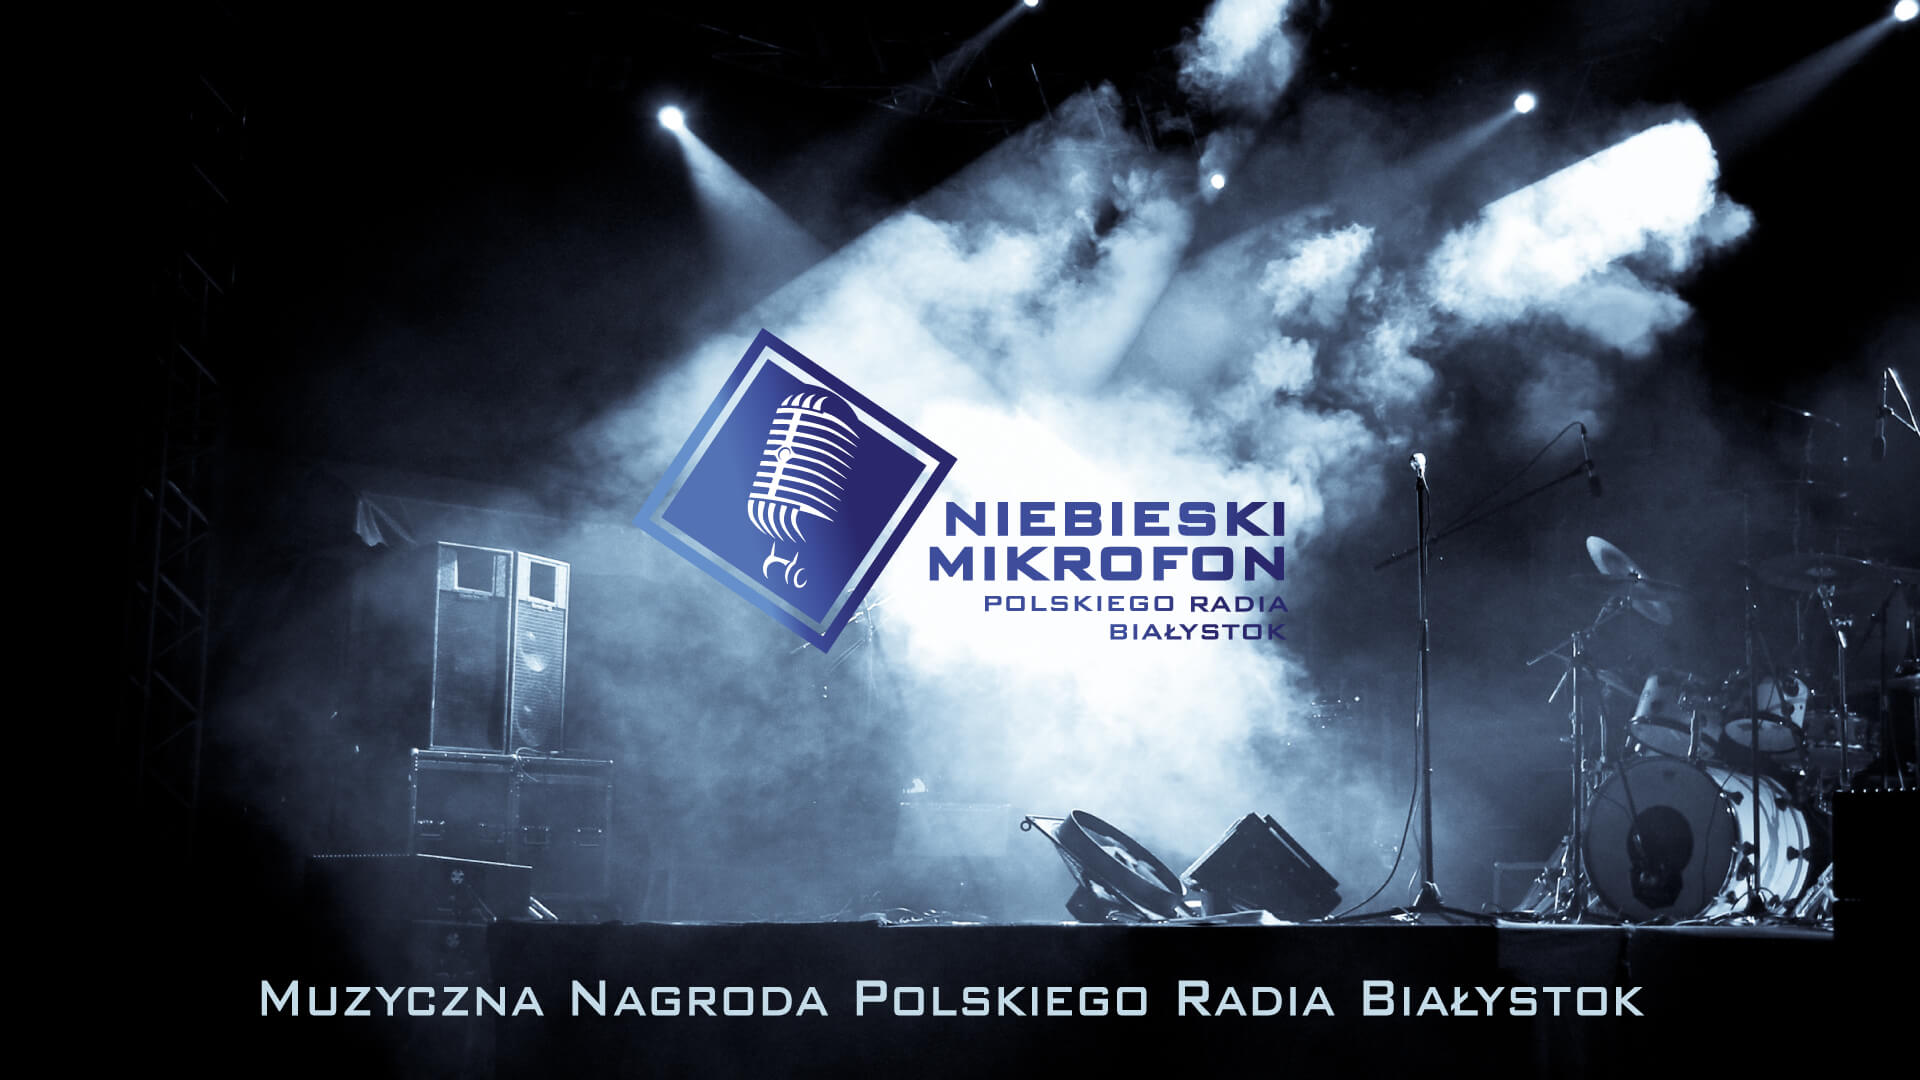 Niebieski Mikrofon Polskiego Radia Białystok